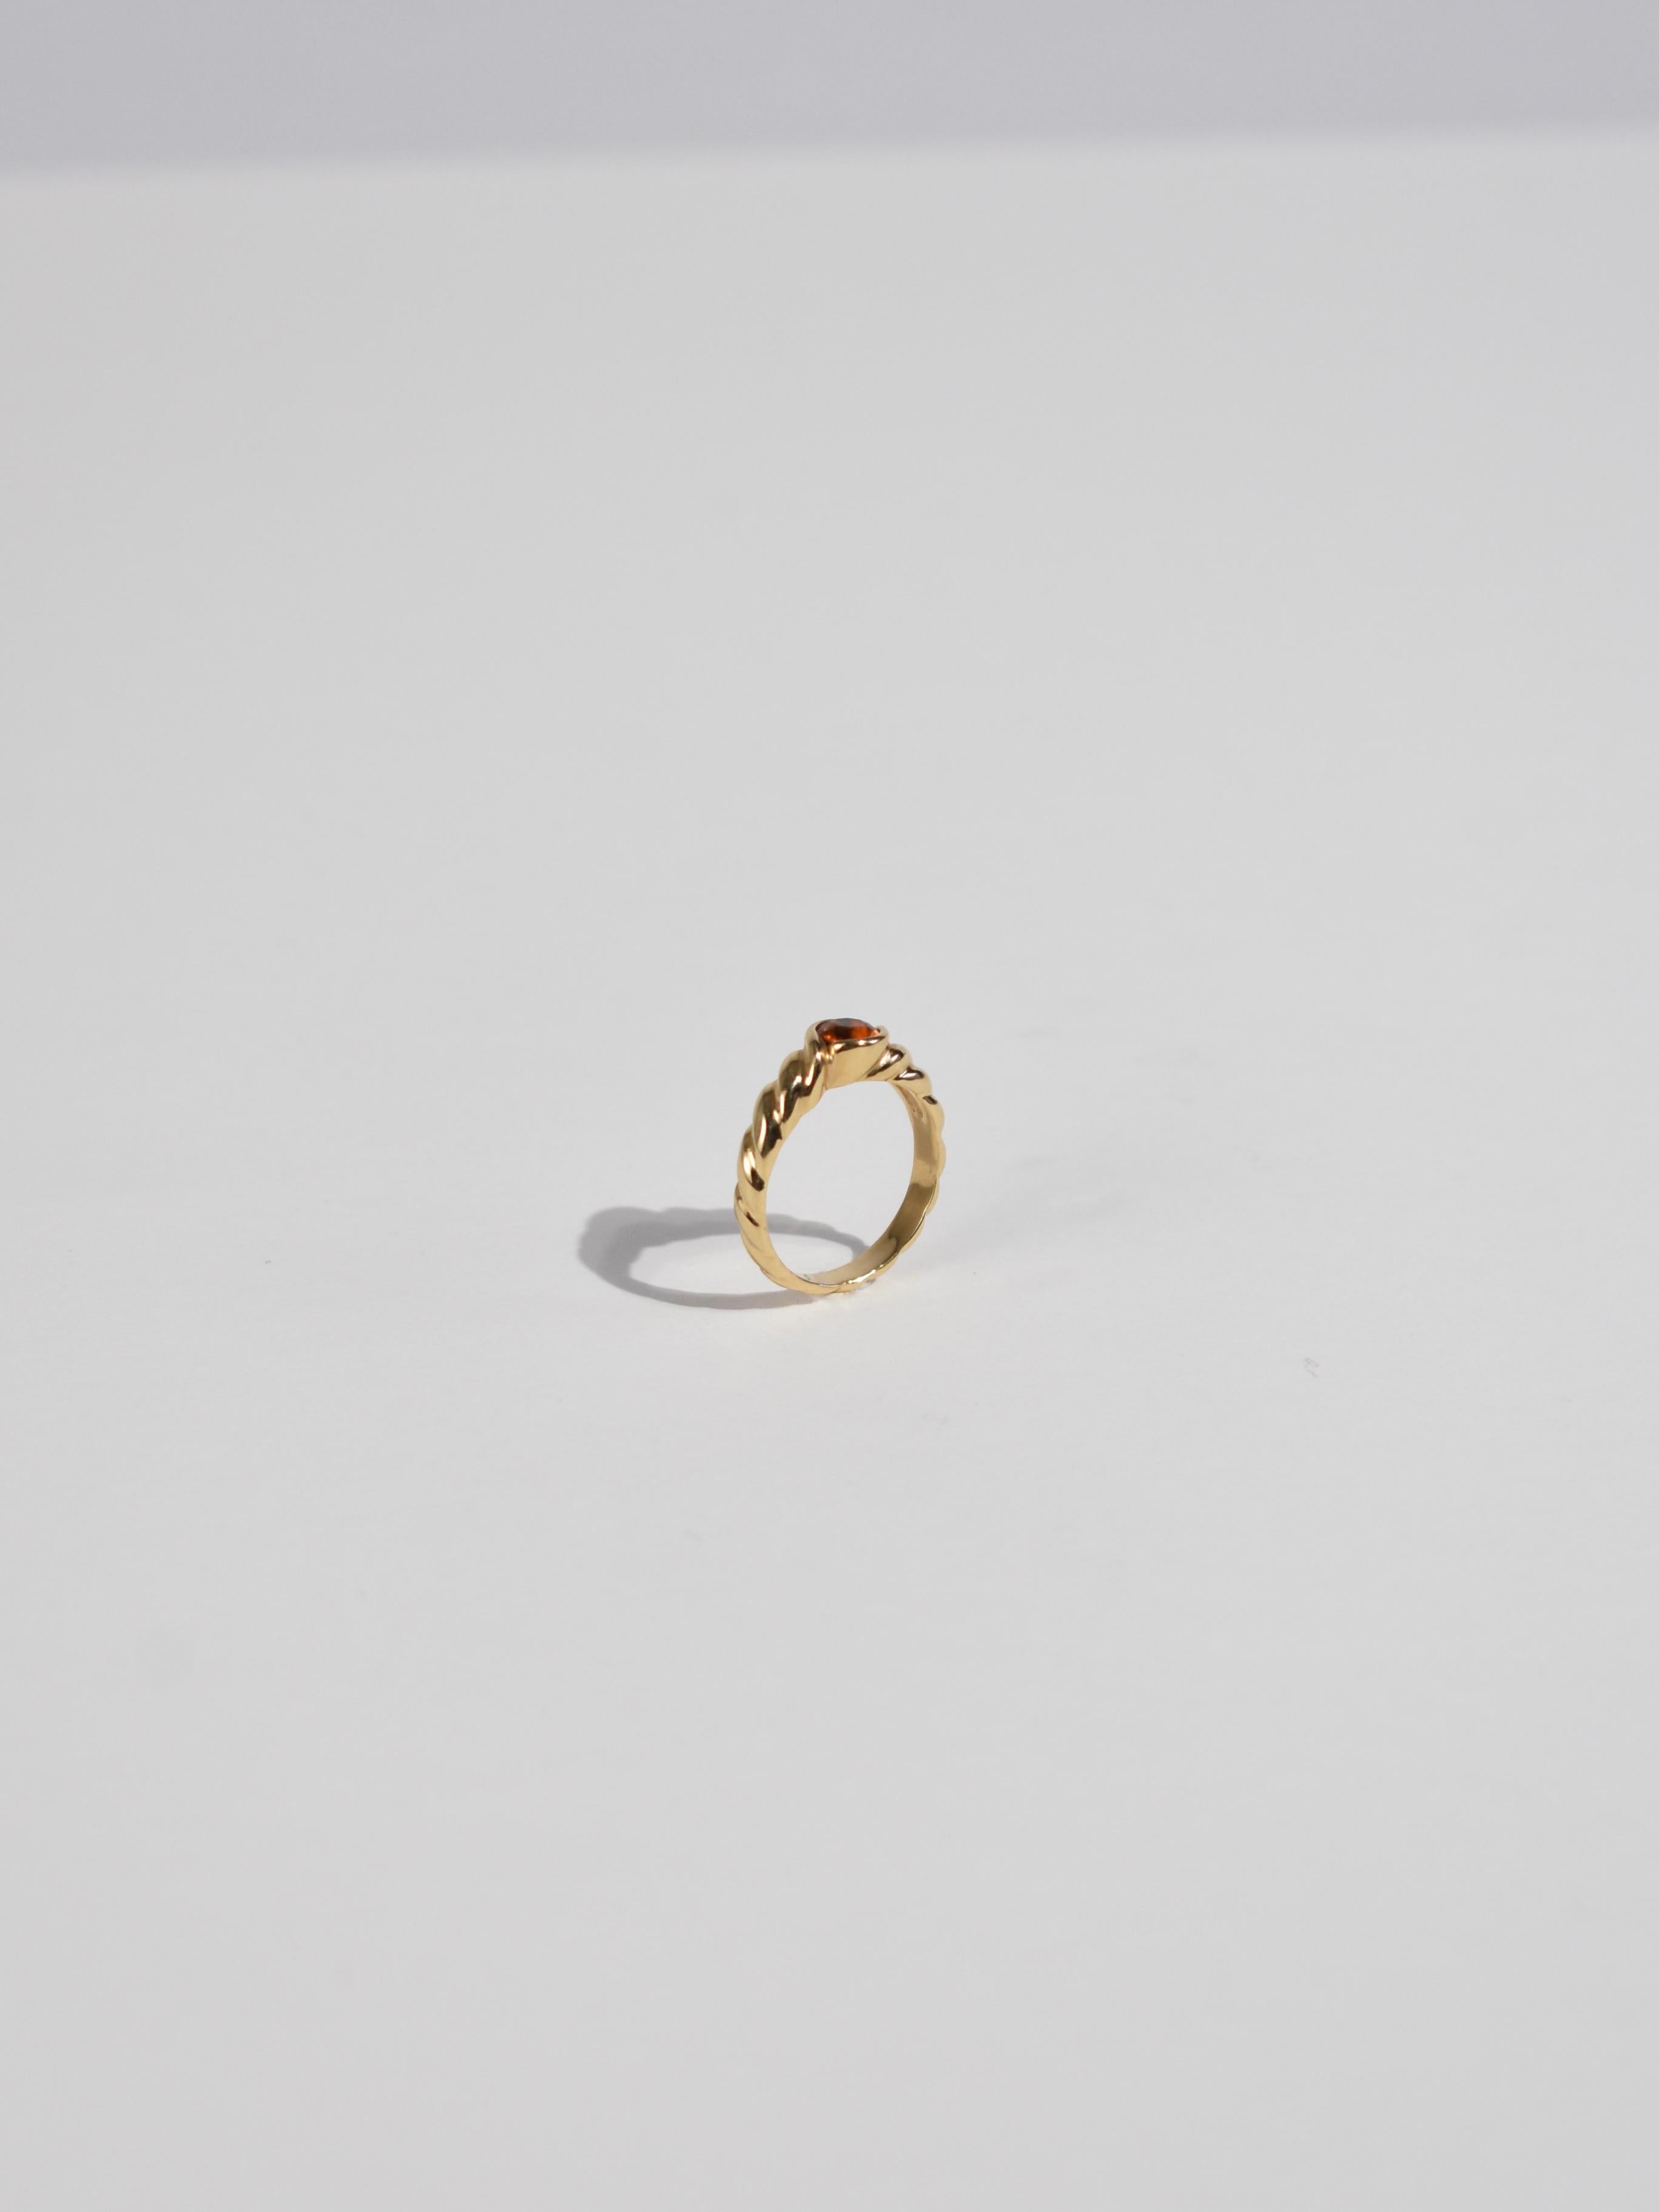 Women's or Men's Gold Topaz Ring For Sale